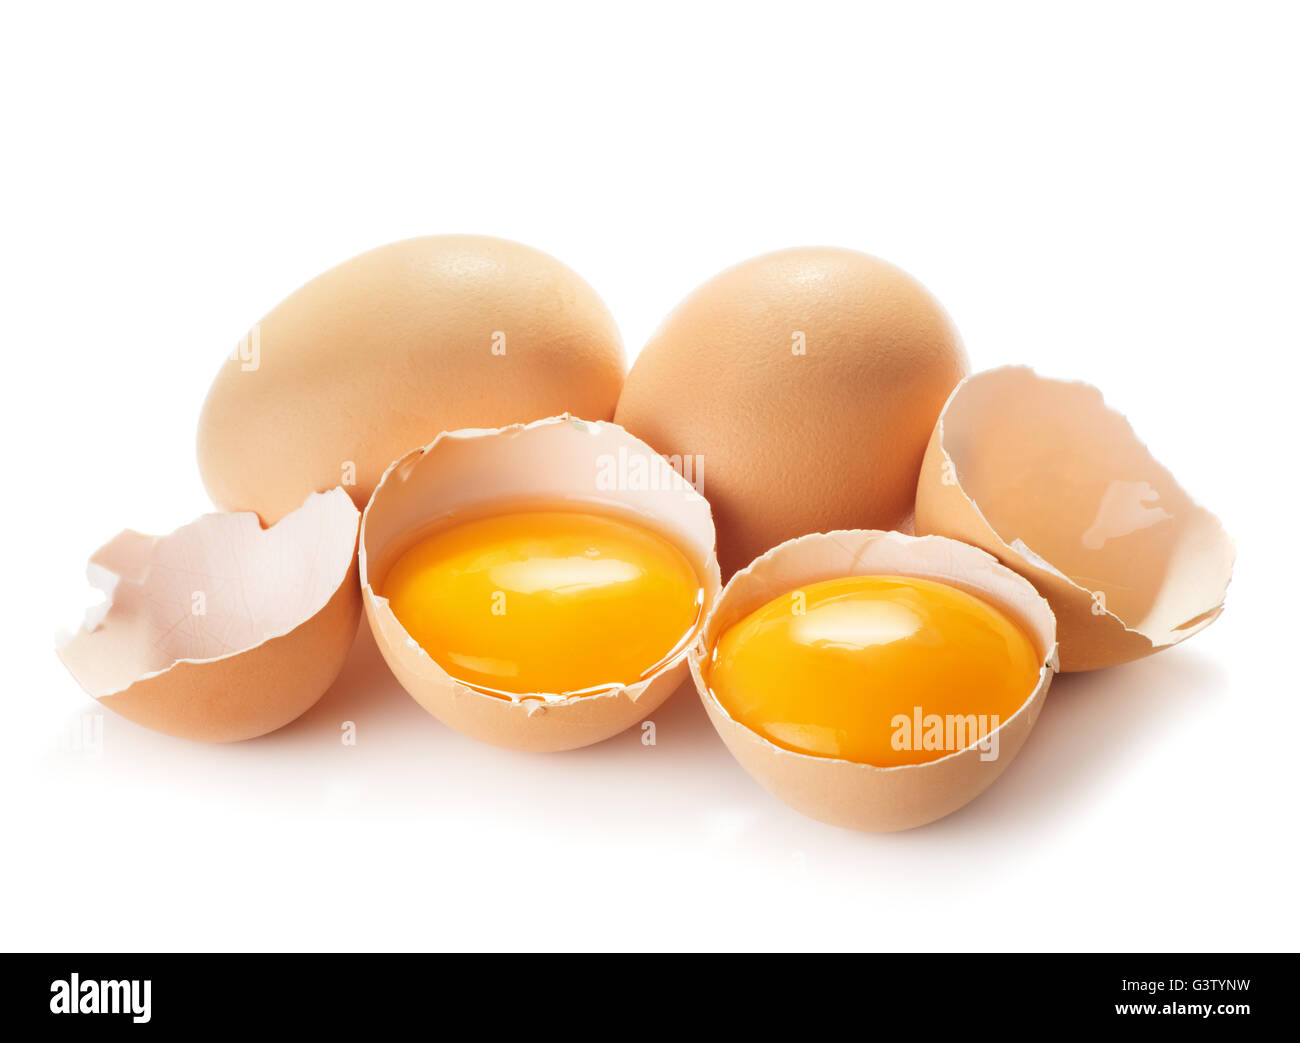 Rotura de huevos de gallina, yemas de huevo y shell closeup aislado sobre fondo blanco. Foto de stock